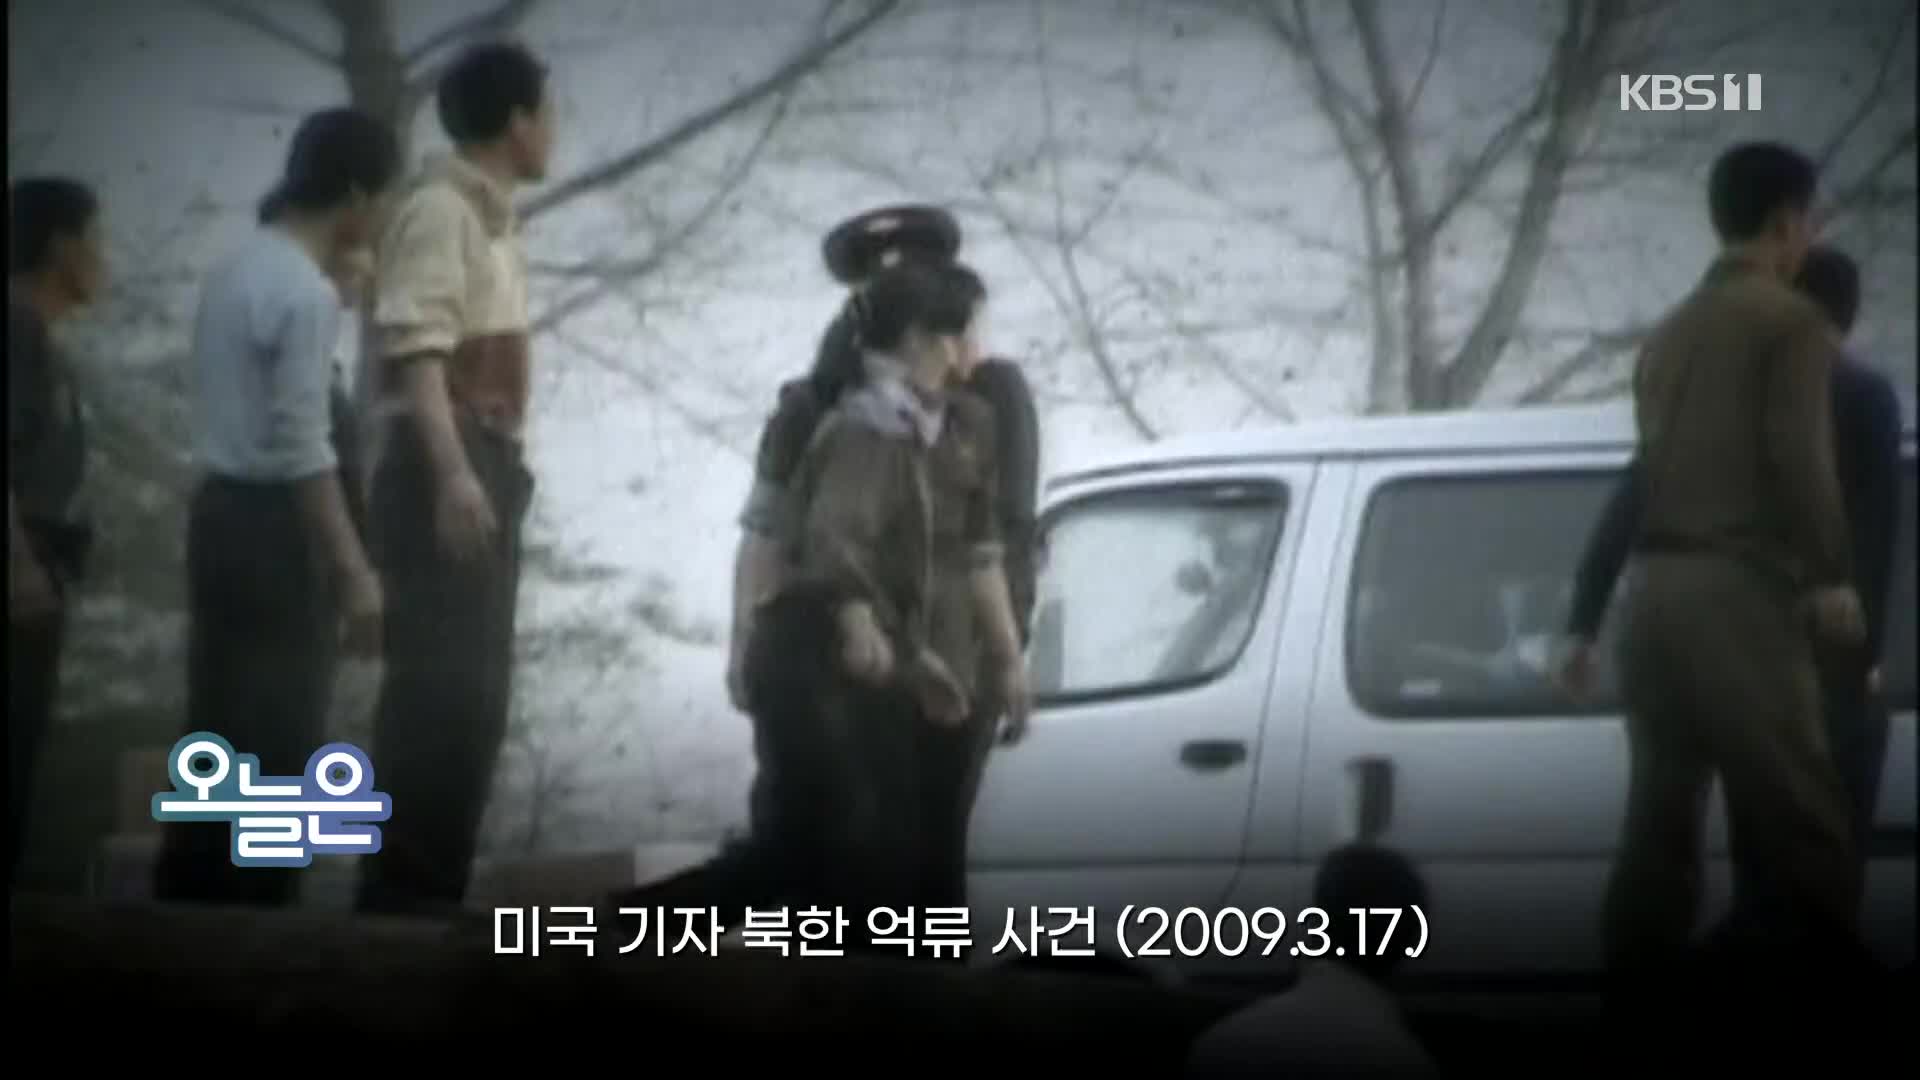 [오늘은] 미국 기자 북한 억류 사건 (2009.3.17.)